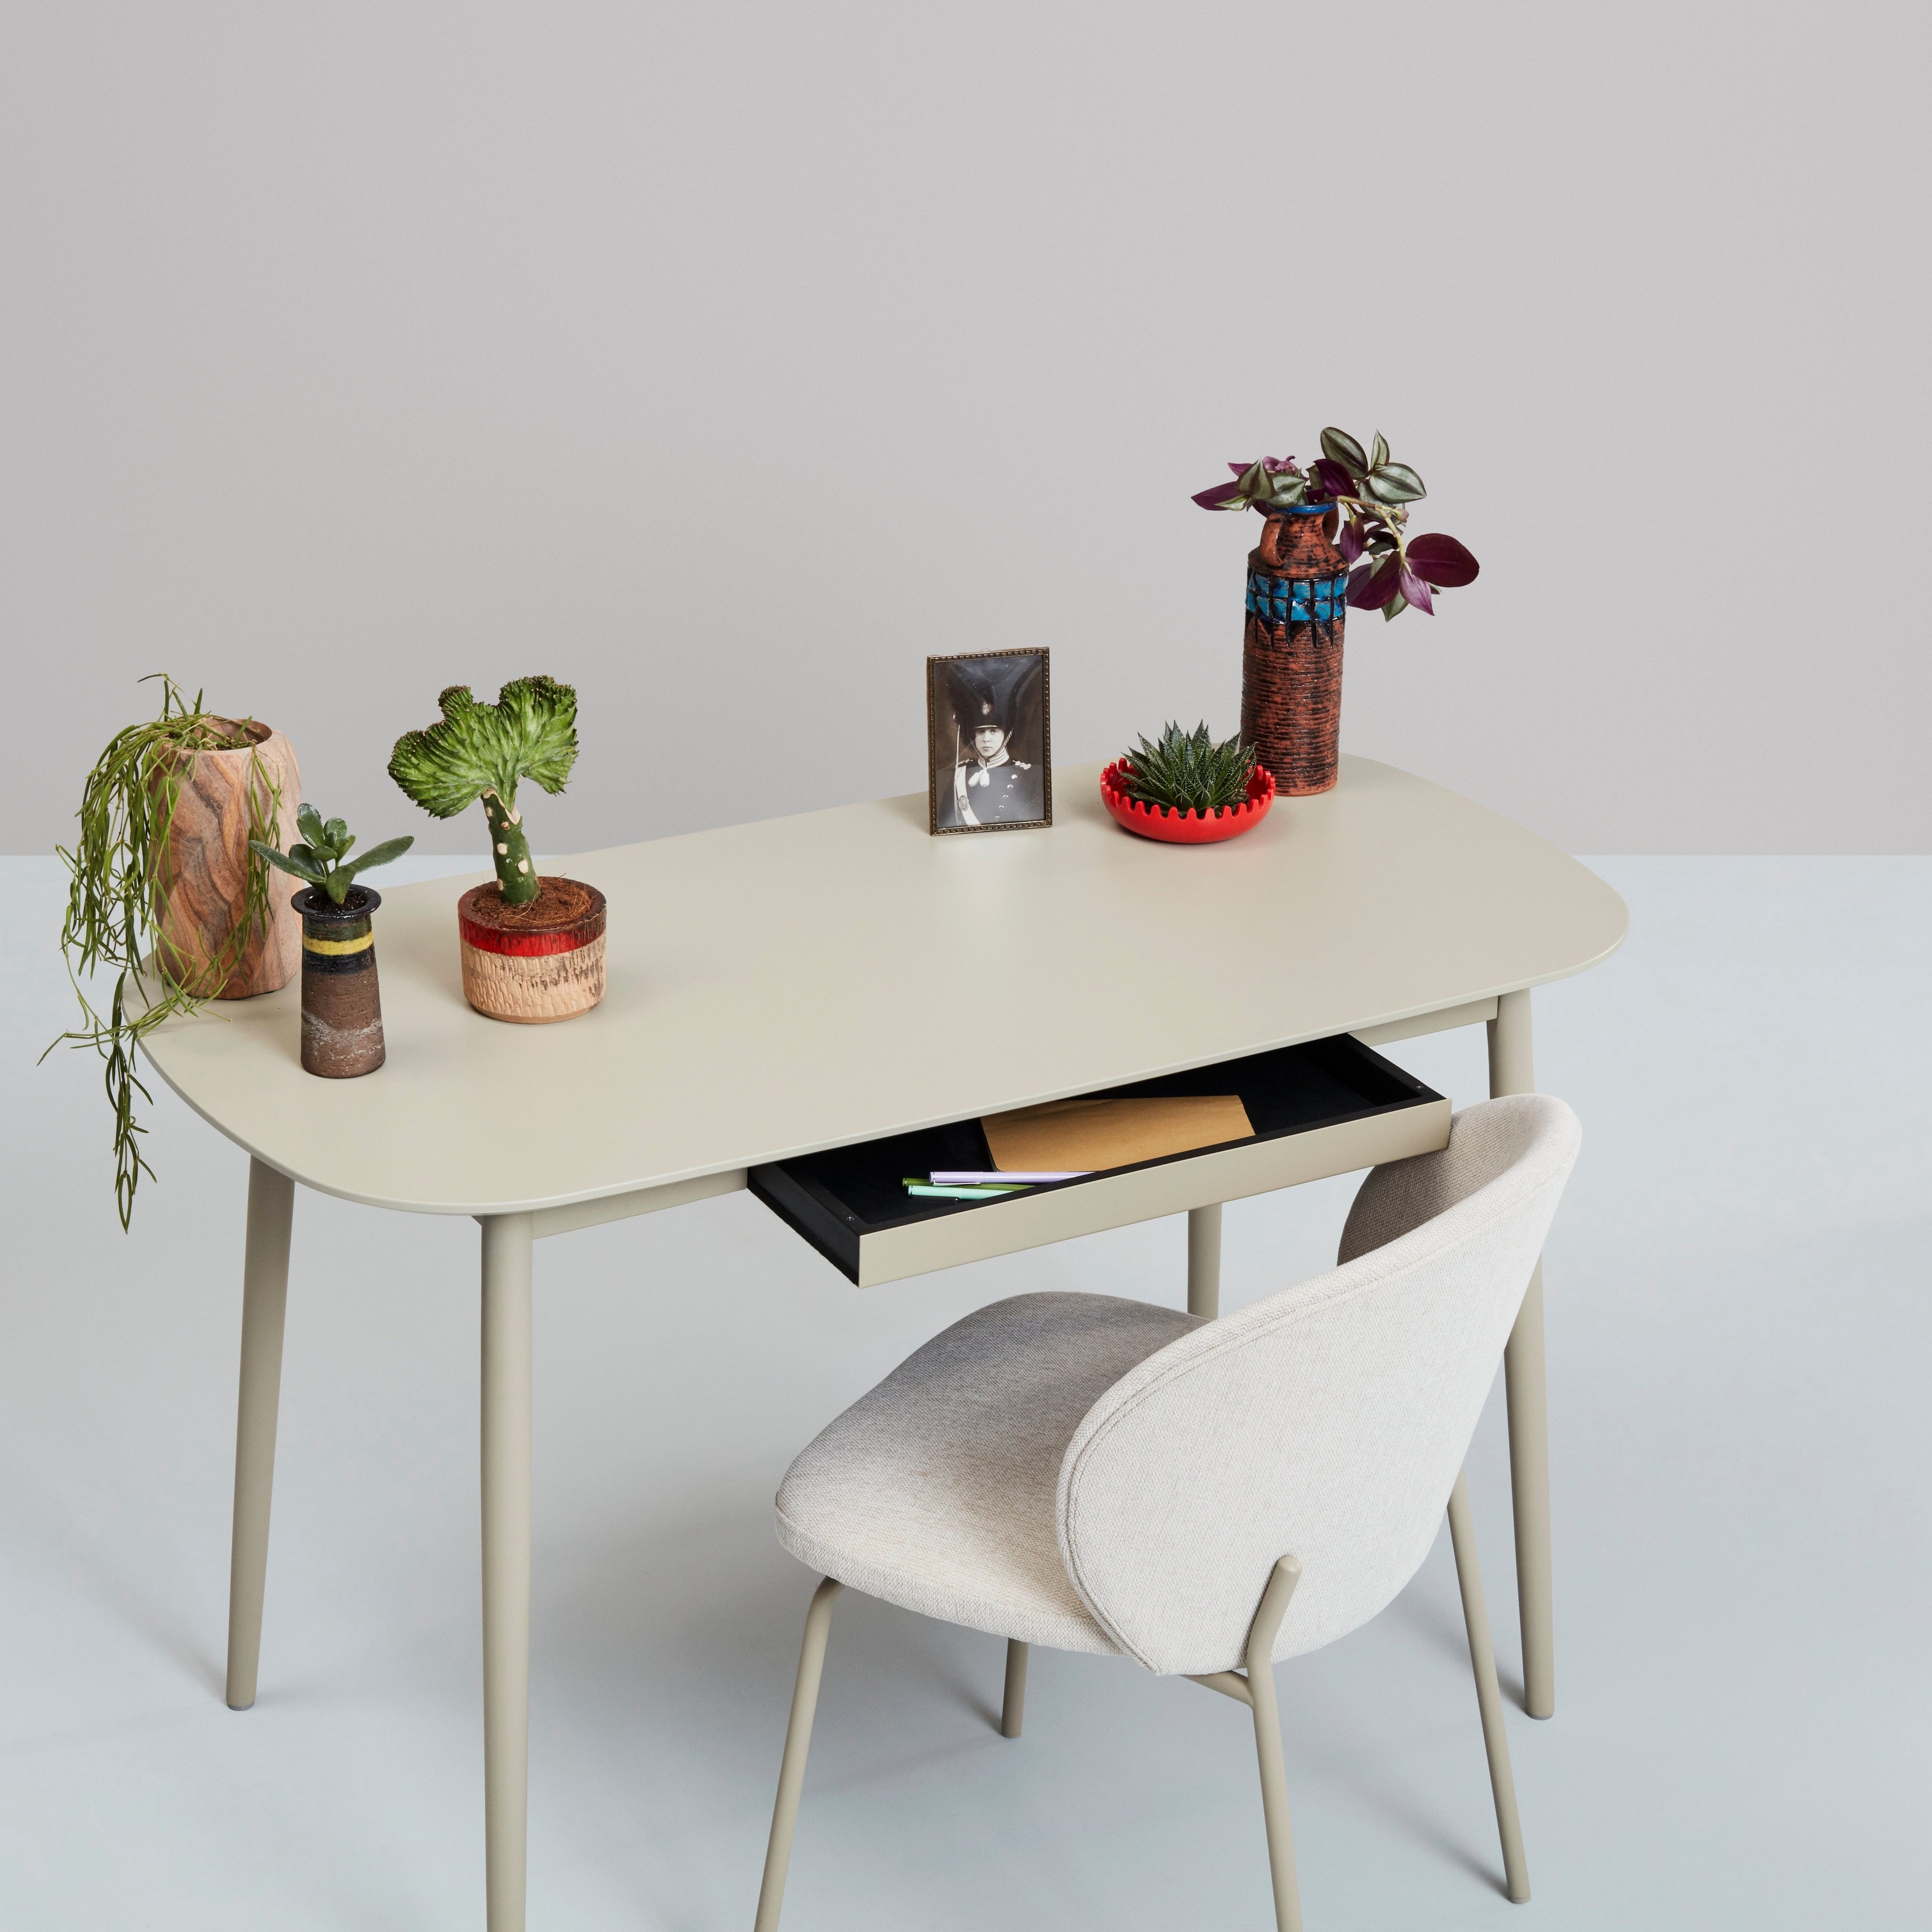 Hvidt skrivebord med planter, dekorative genstande og en stol mod en neutral baggrund.